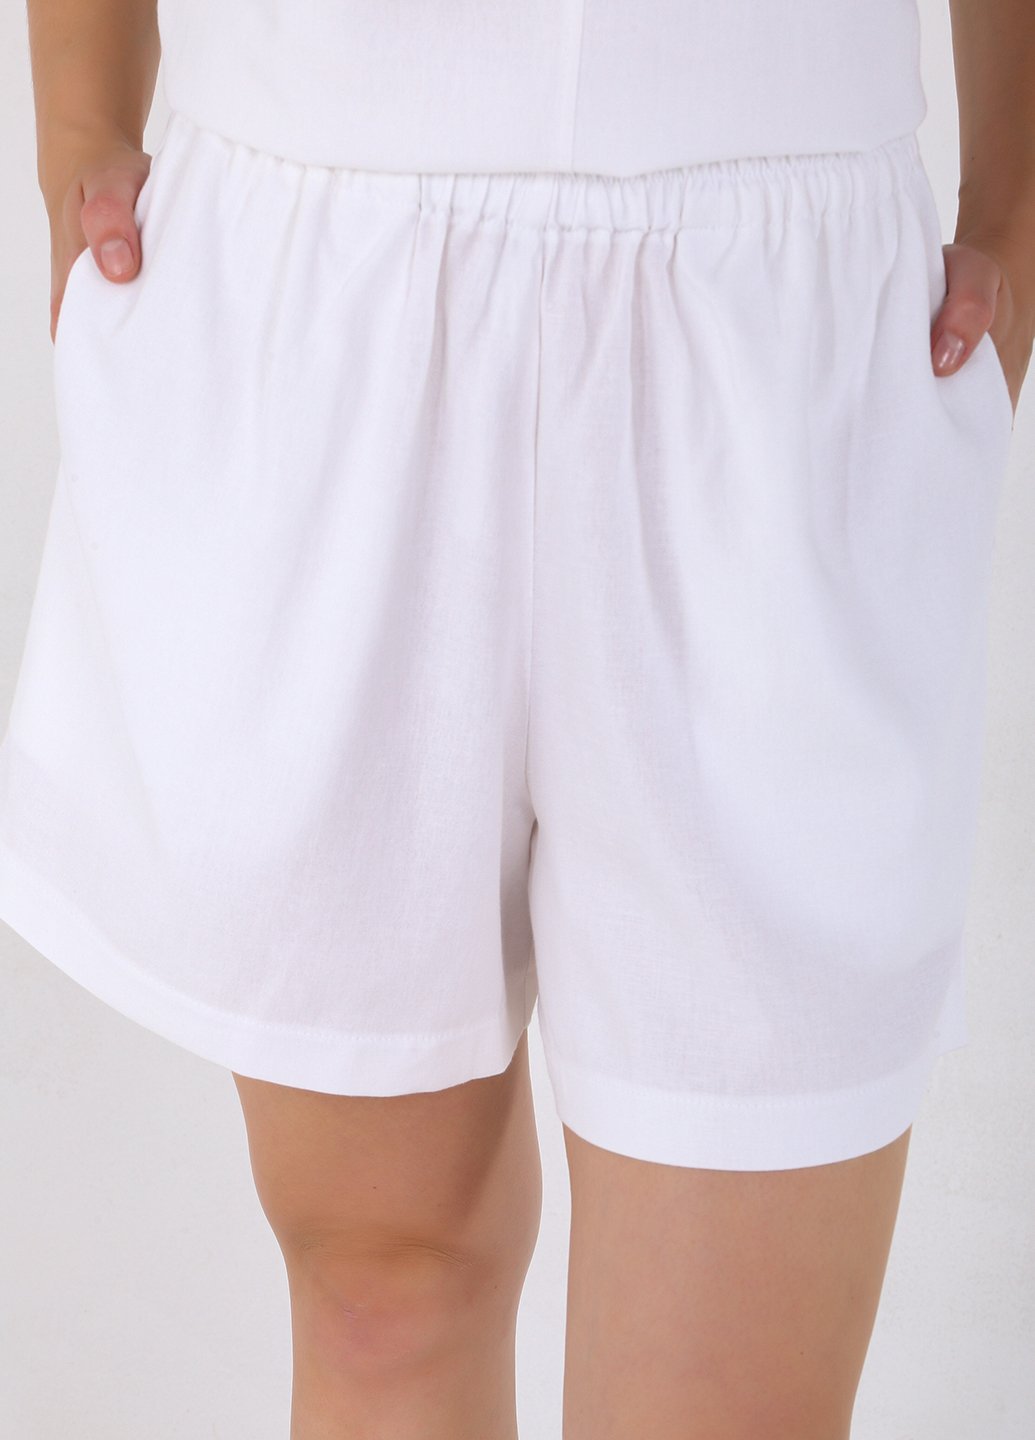 Купить Льняные шорты женские бермуды белого цвета Merlini Турин 300000045, размер 42-44 в интернет-магазине